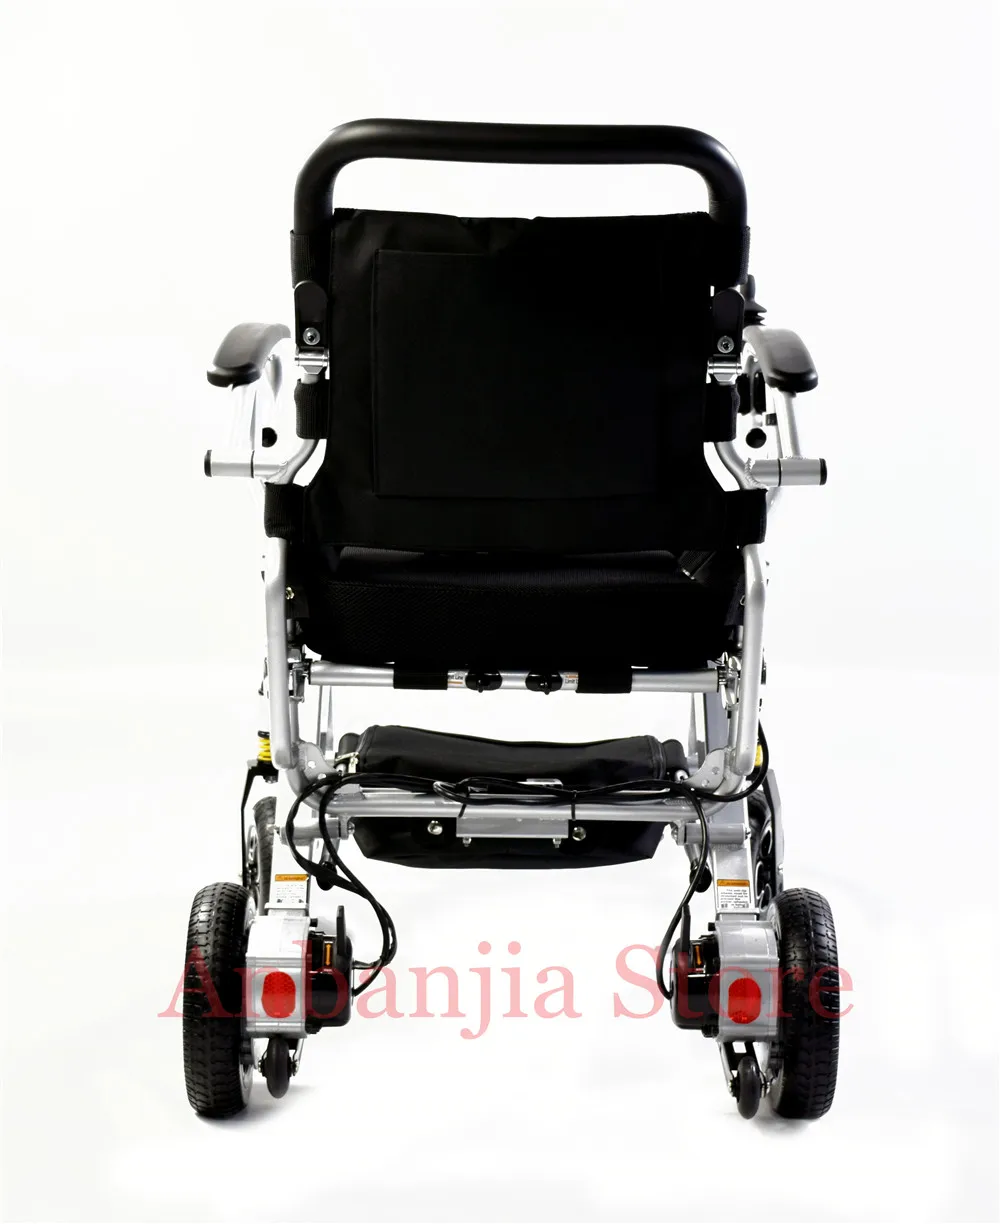 Электрический инвалидный колясок цены мощность легкий людей с ограниченными возможностями электрическая инвалидная коляска с высоким качеством для людей с ограниченными возможностями, пожилых людей